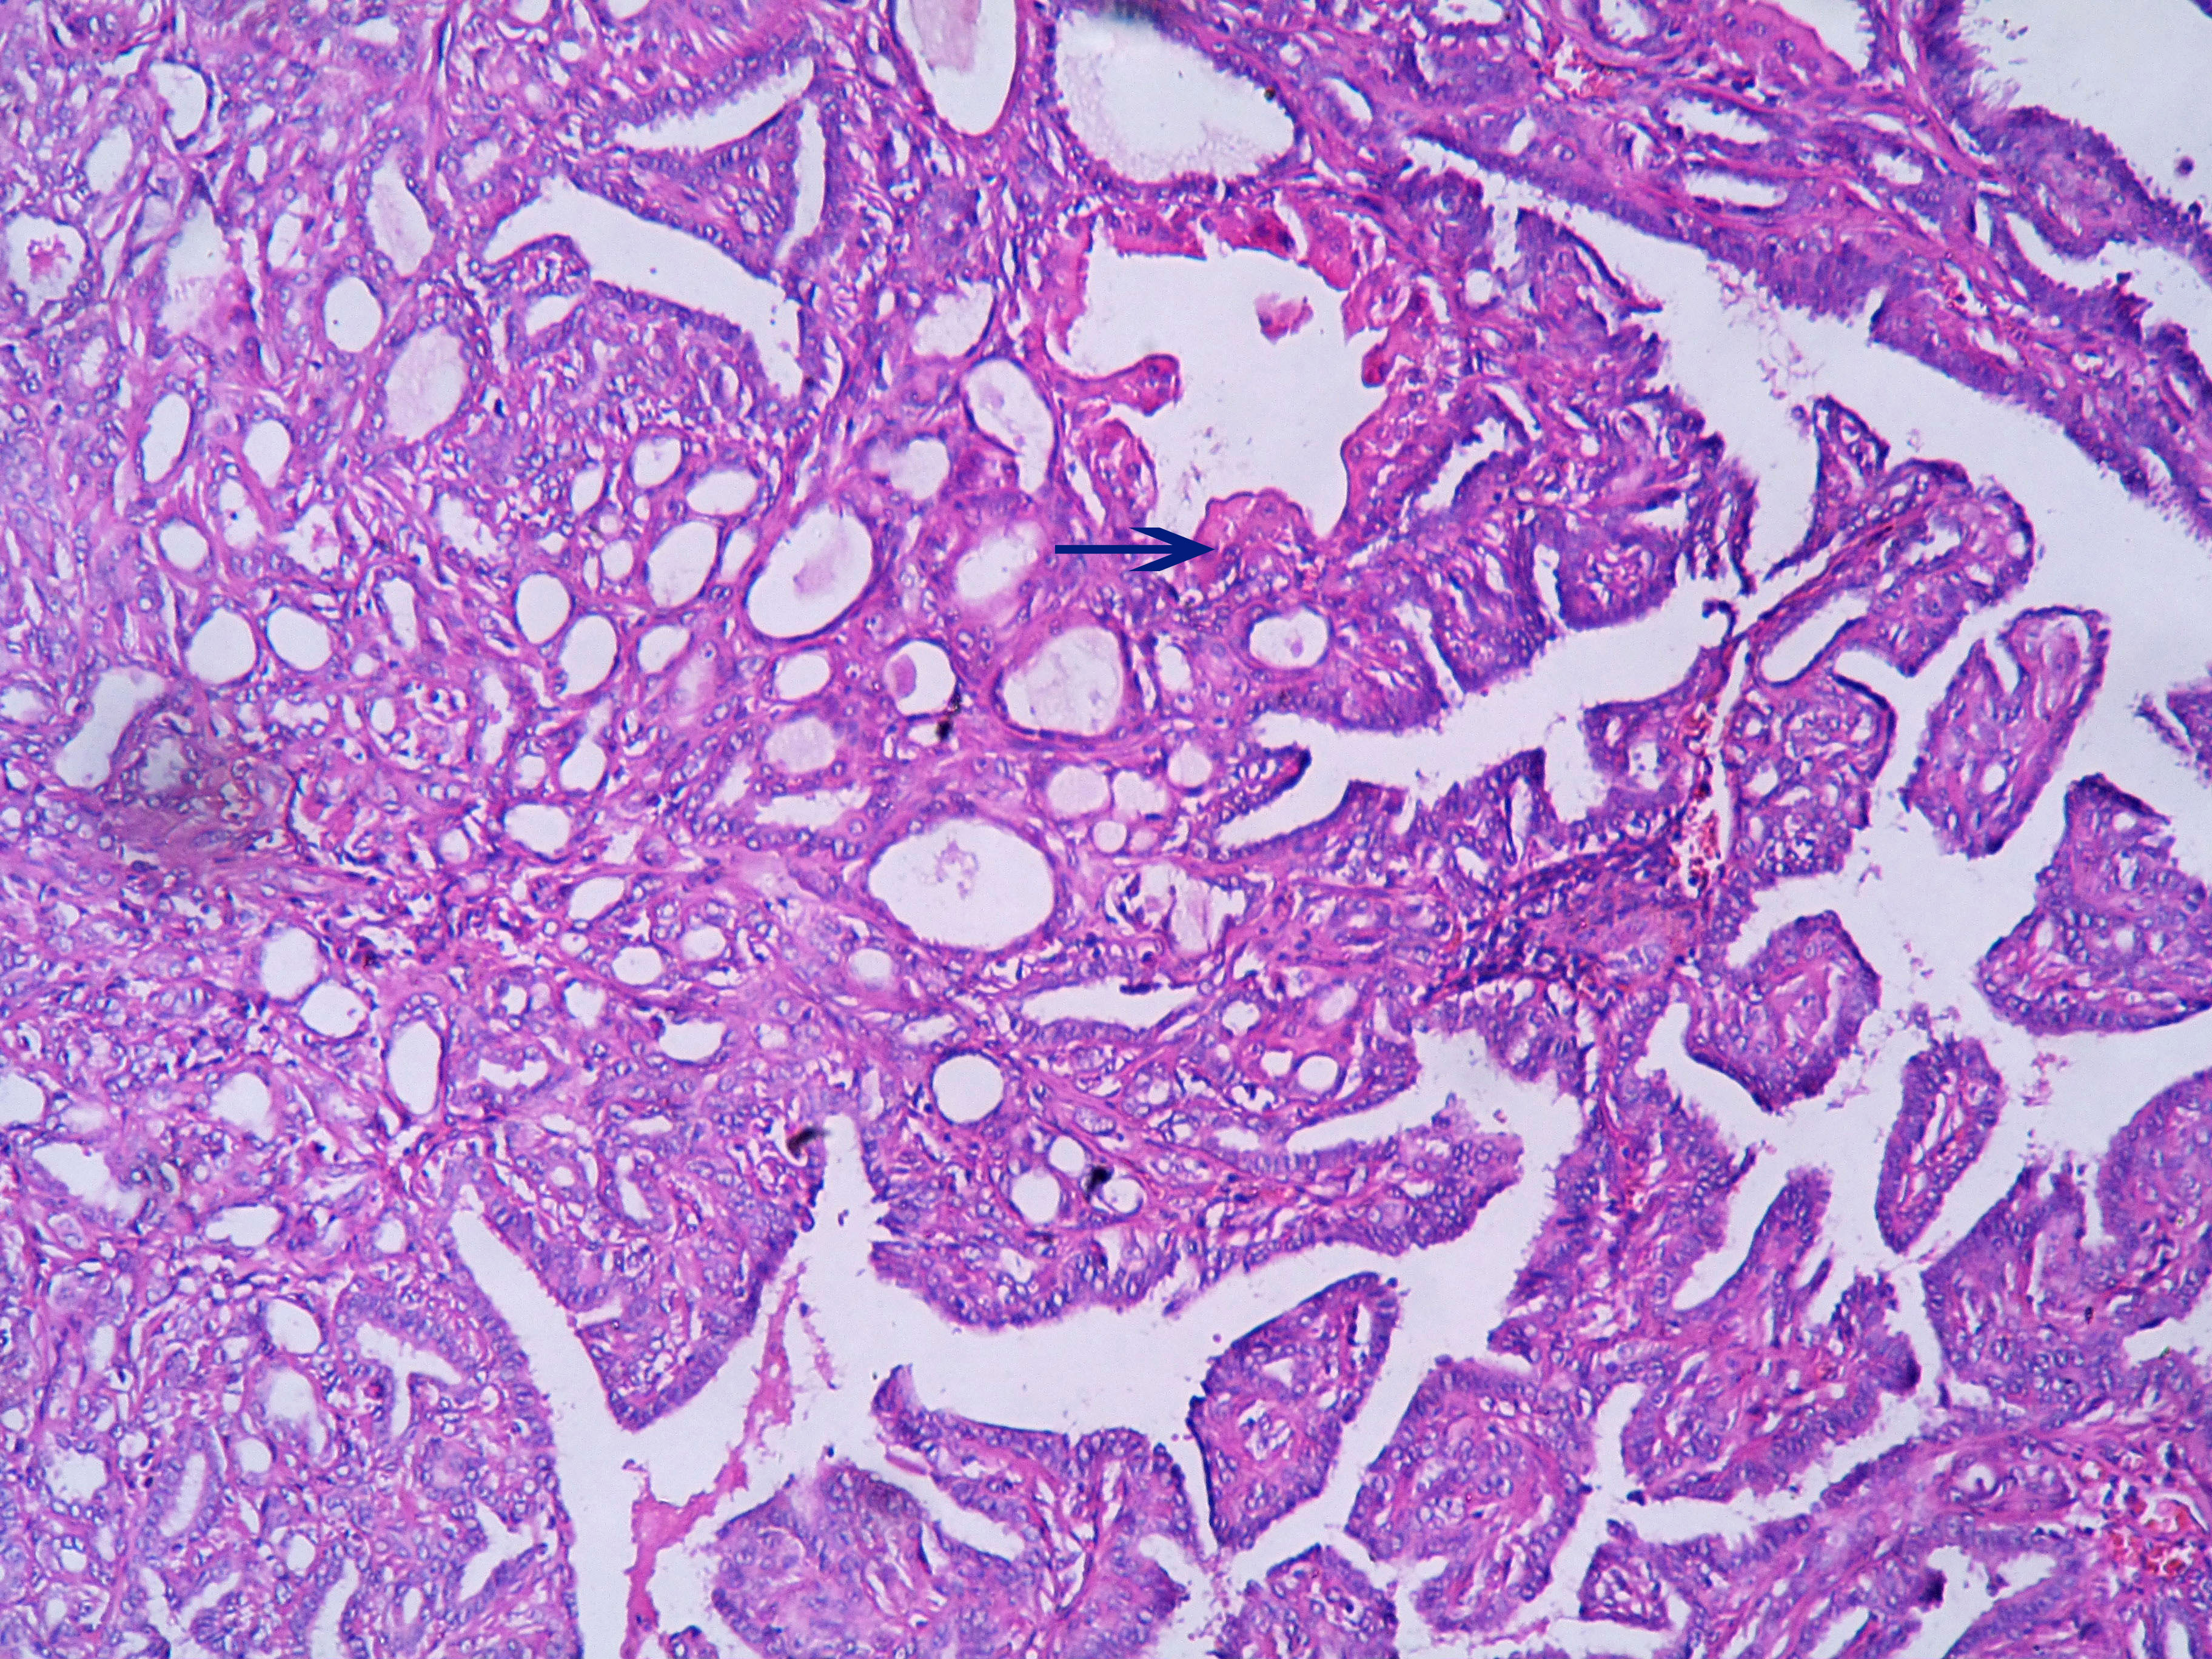 Papilloma with apocrine metaplasia